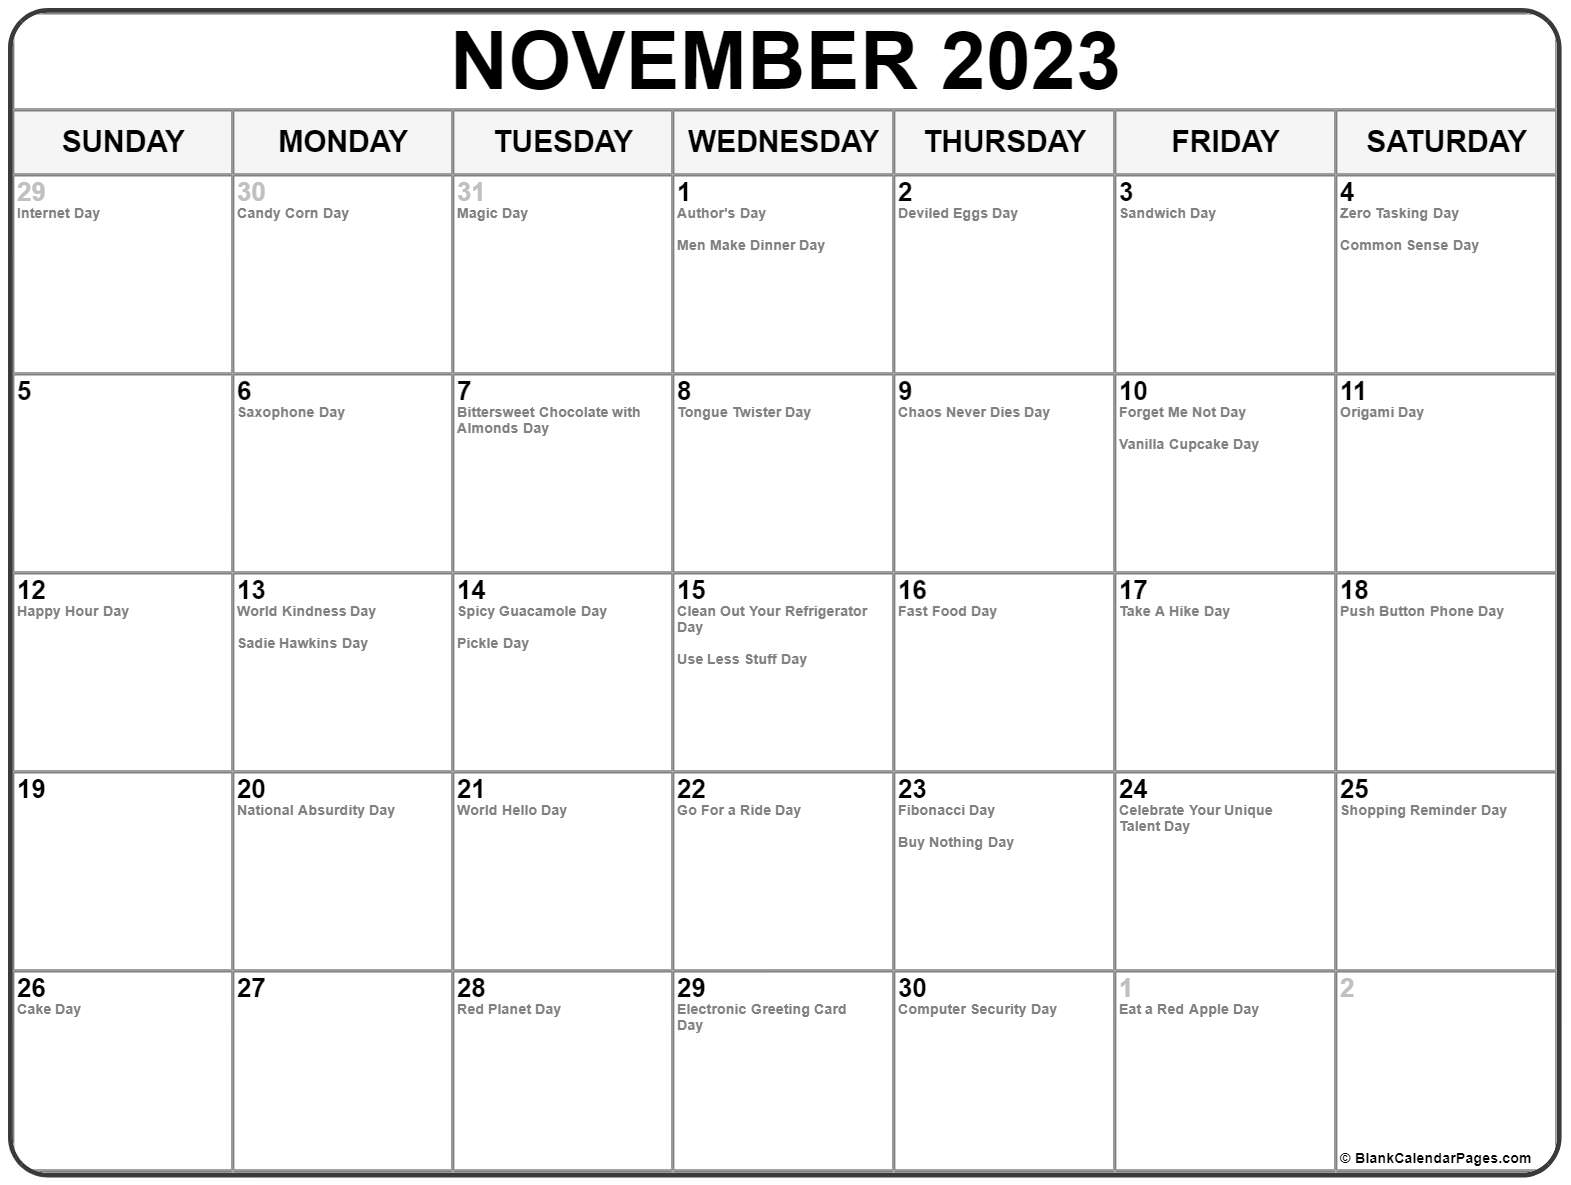 november-2023-eu-calendar-with-holidays-for-printing-image-format